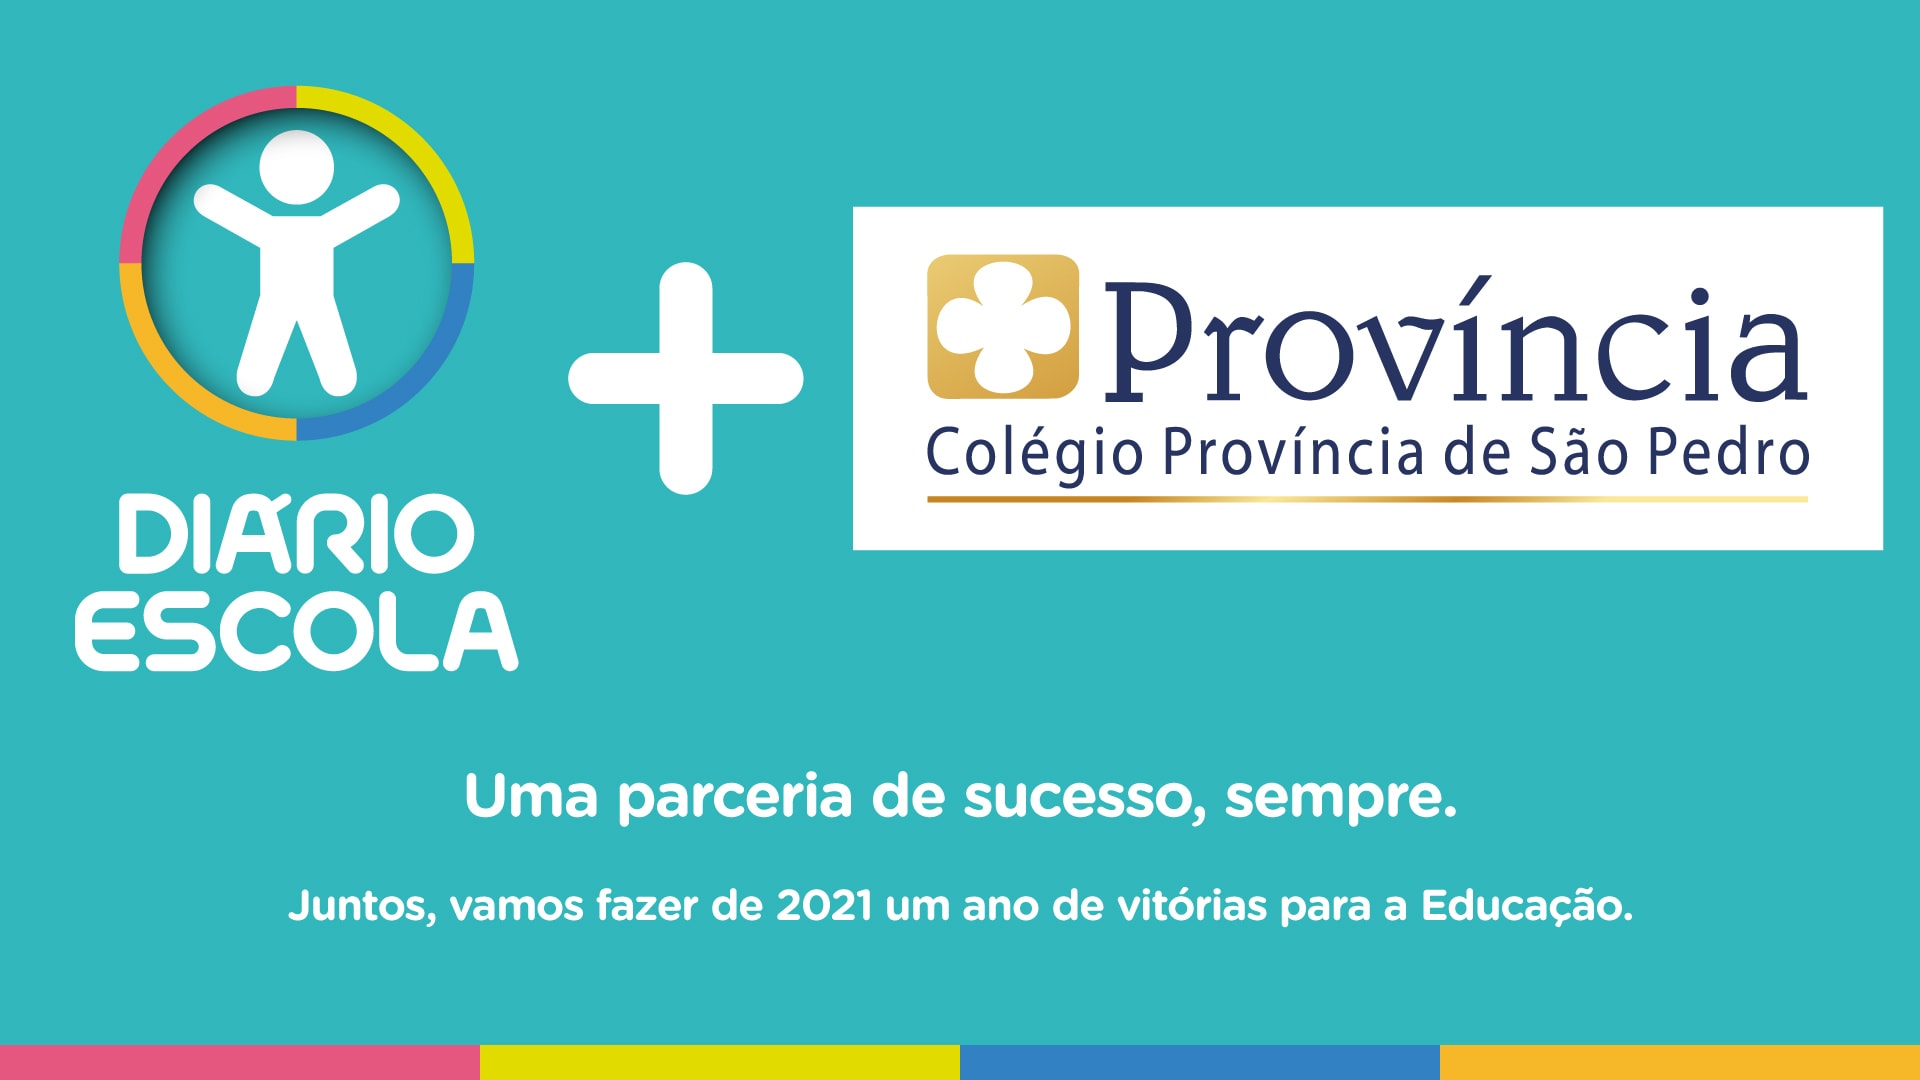 Colégio Província de São Pedro e a parceria de sucesso com o Diário Escola